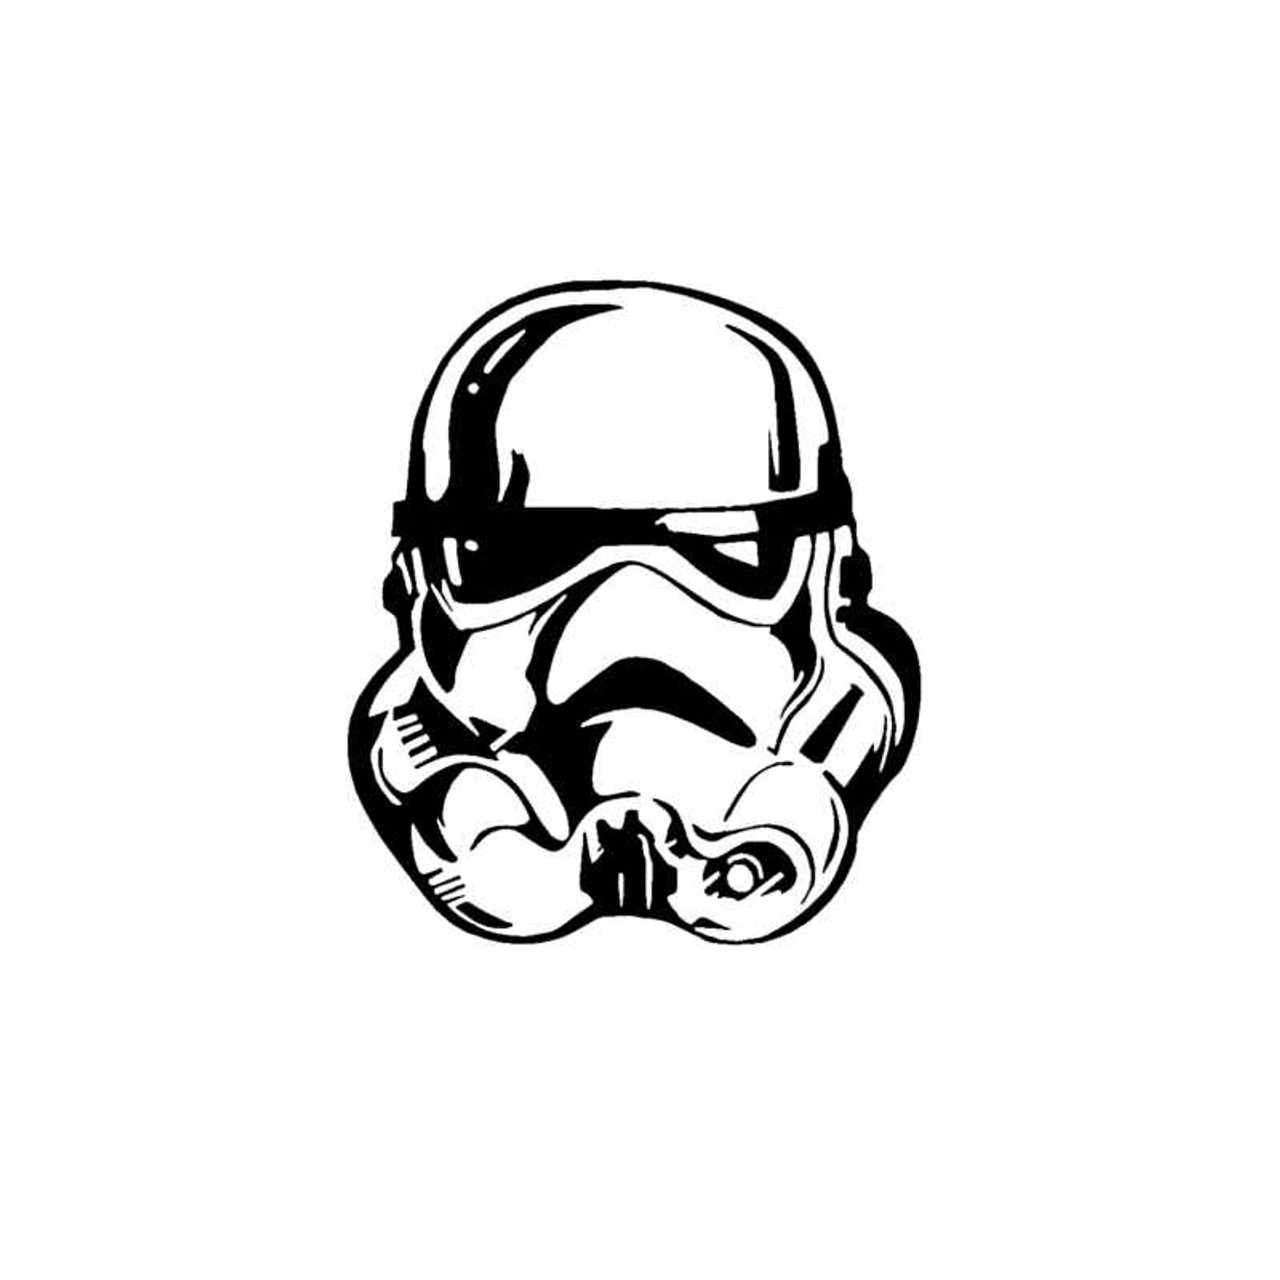 stormtrooper helmet decal